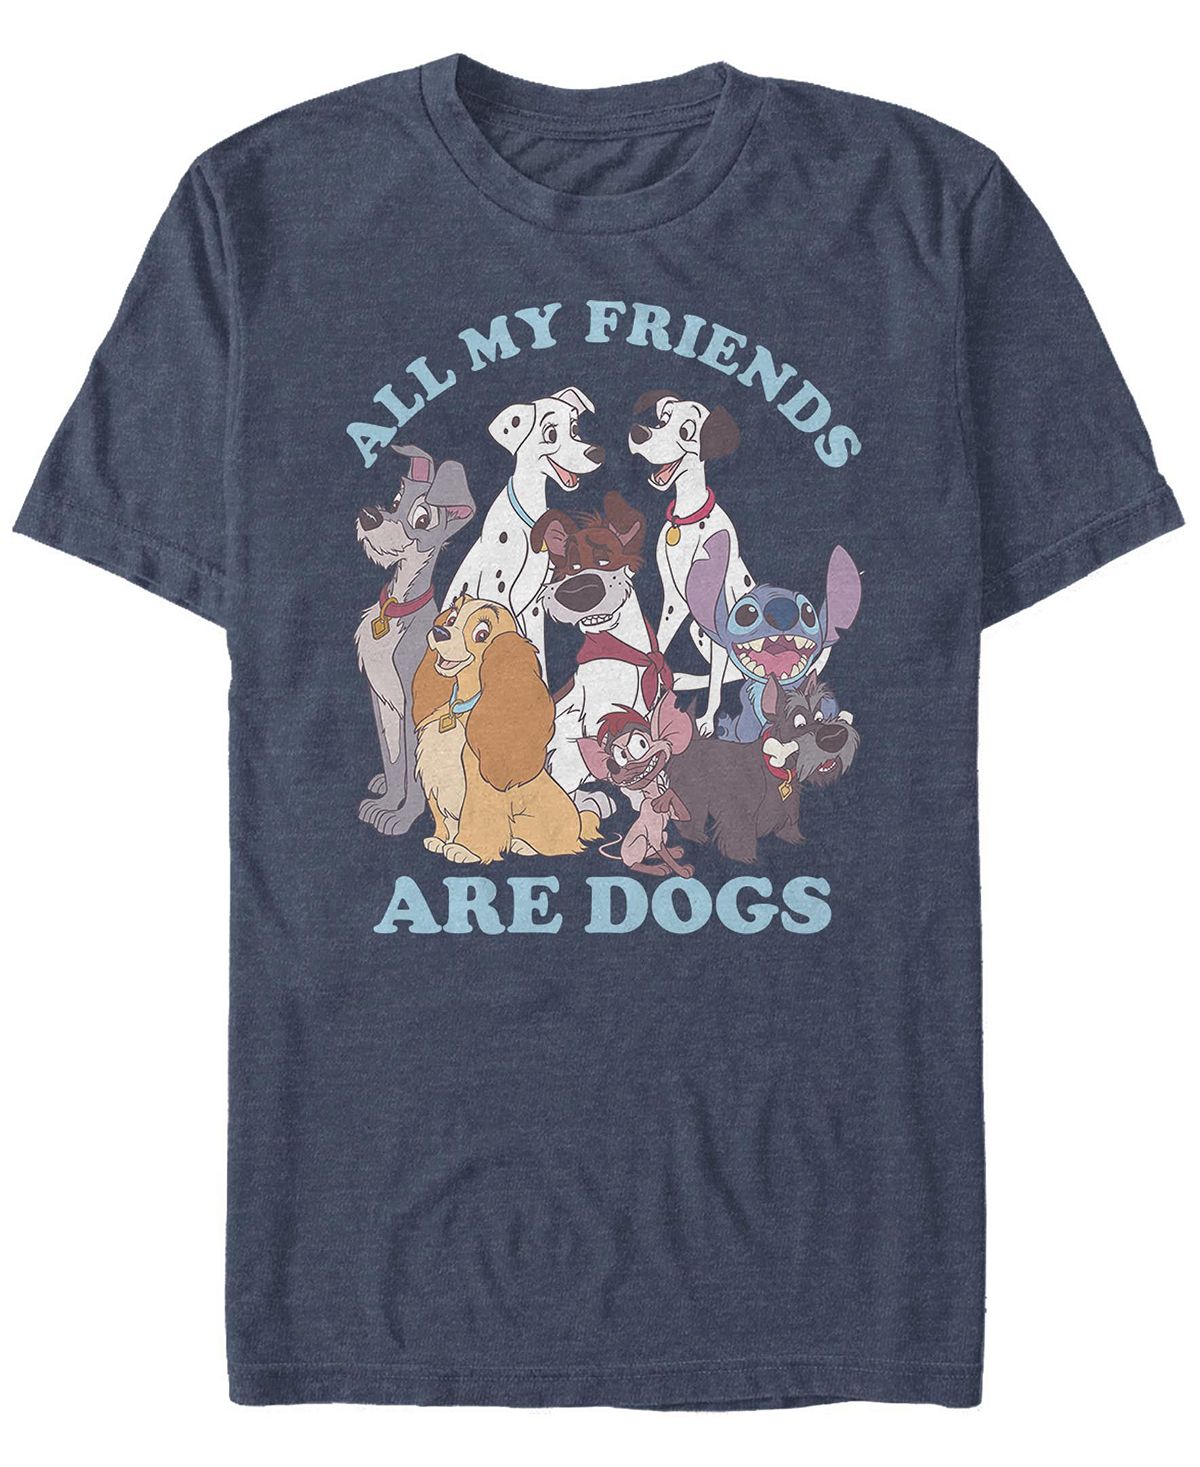 Мужская футболка с короткими рукавами disney multi franchise dog friends Fifth Sun, синий коты аристократы невероятные приключения кота 2 dvd